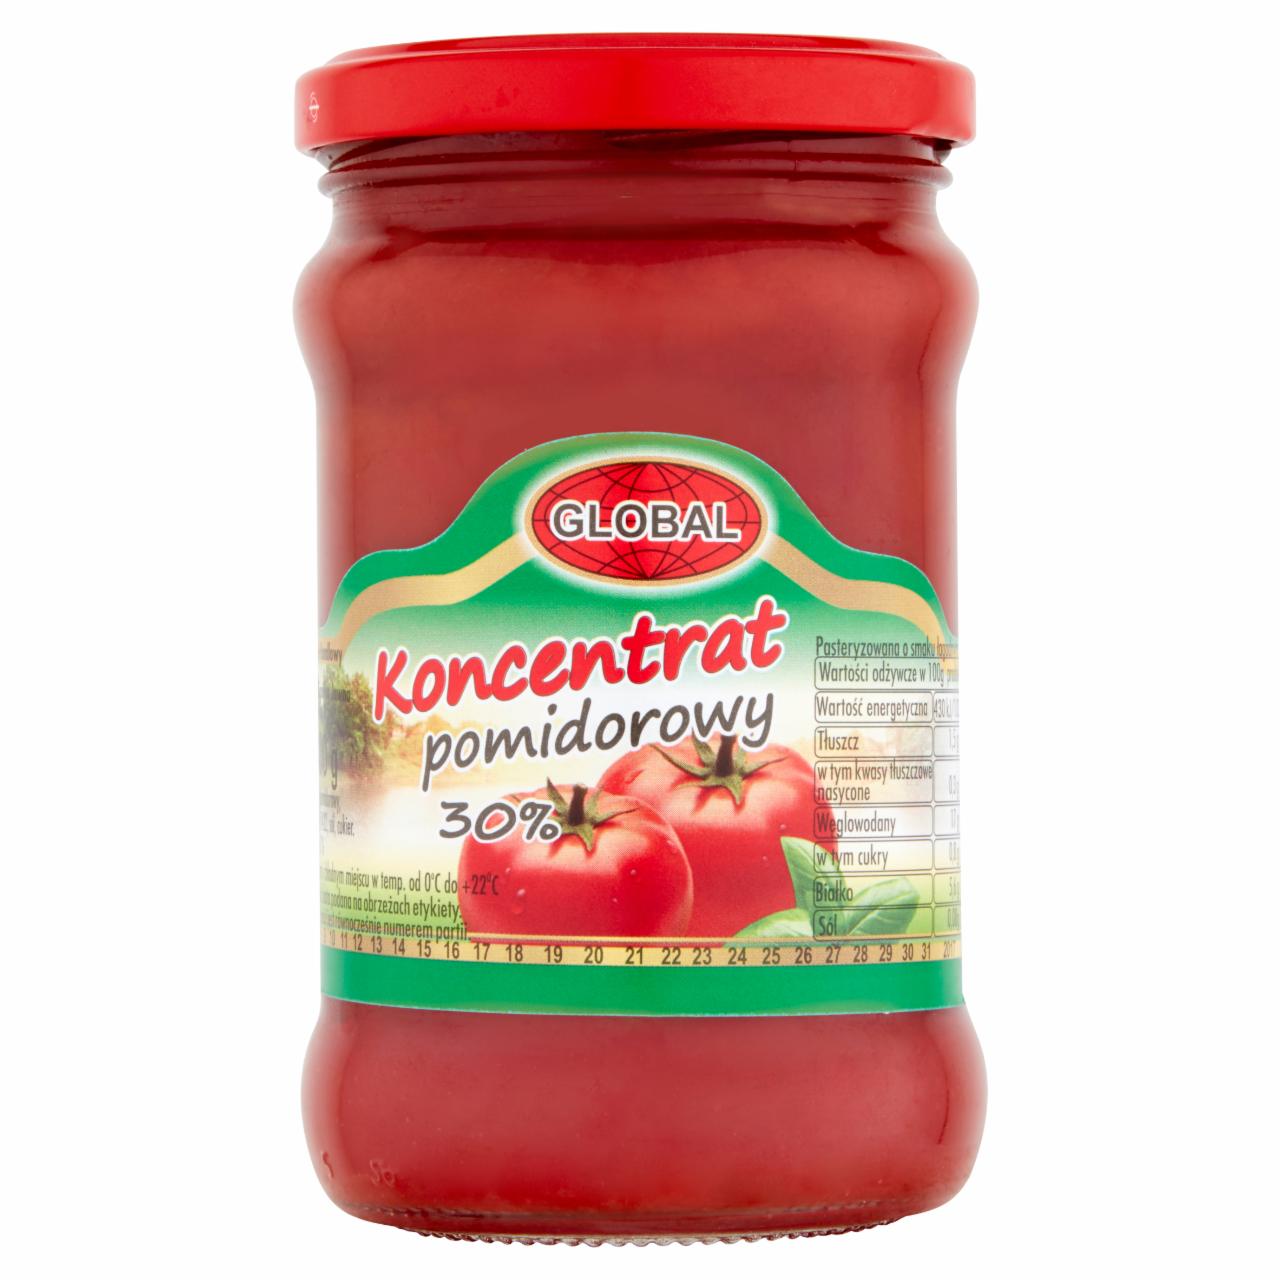 Zdjęcia - Global Koncentrat pomidorowy 30% 300 g